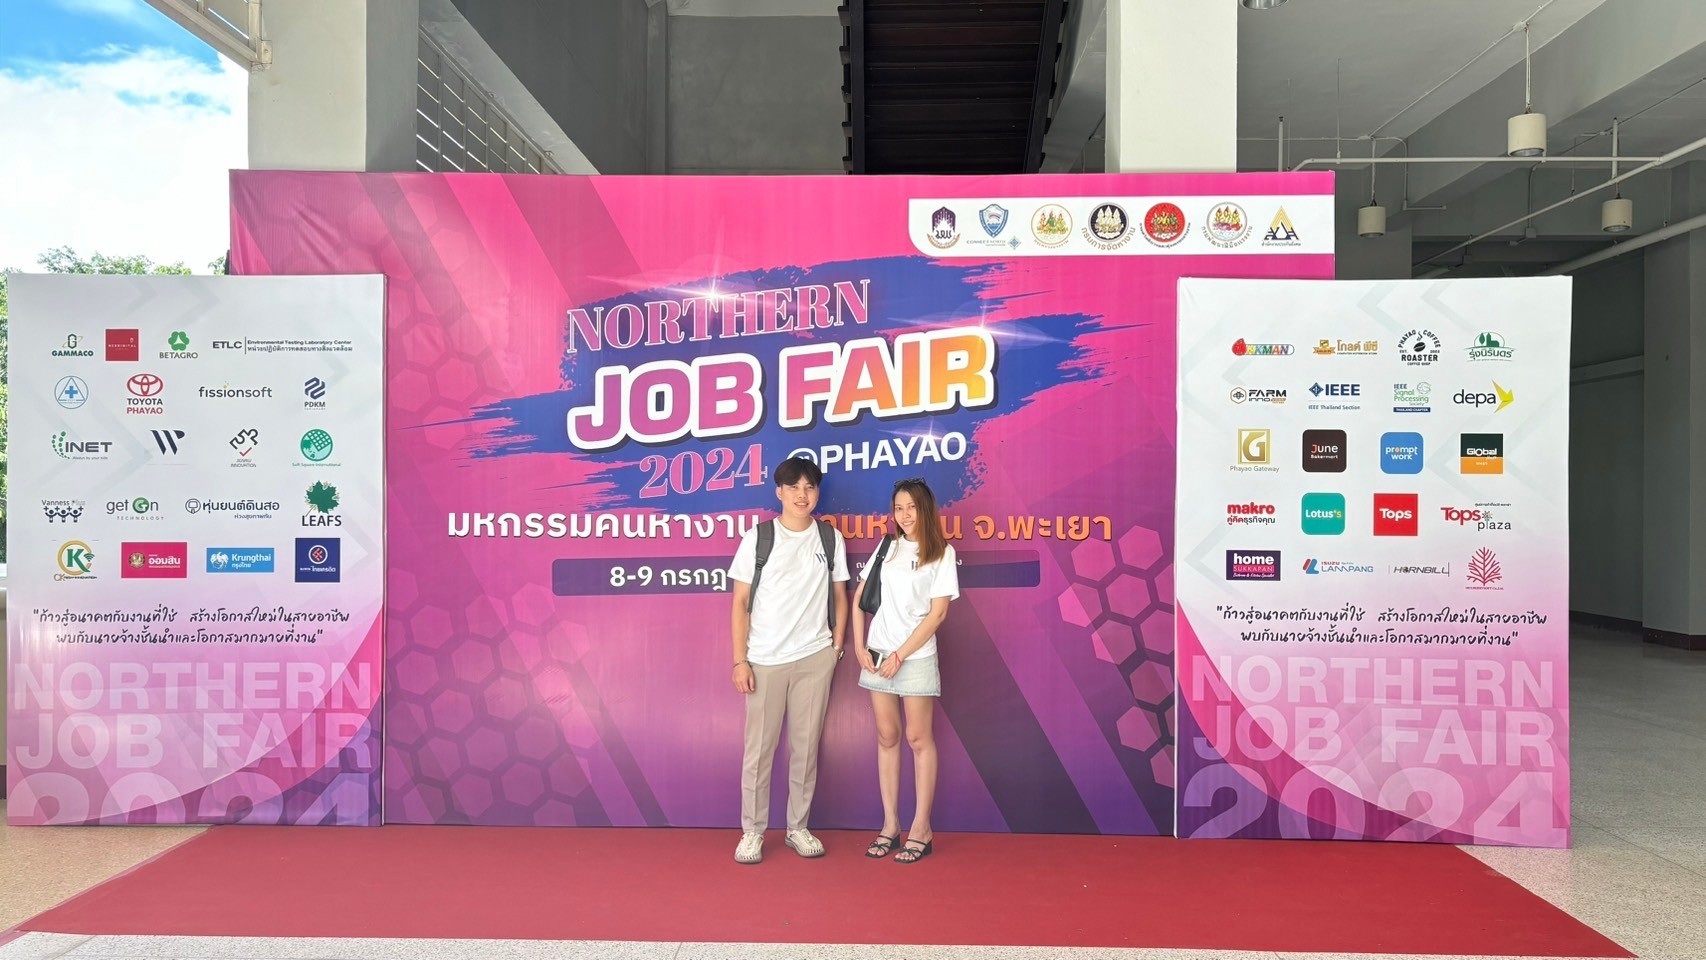 Wewebplus x Northern Job Fair 2024 @Phayao